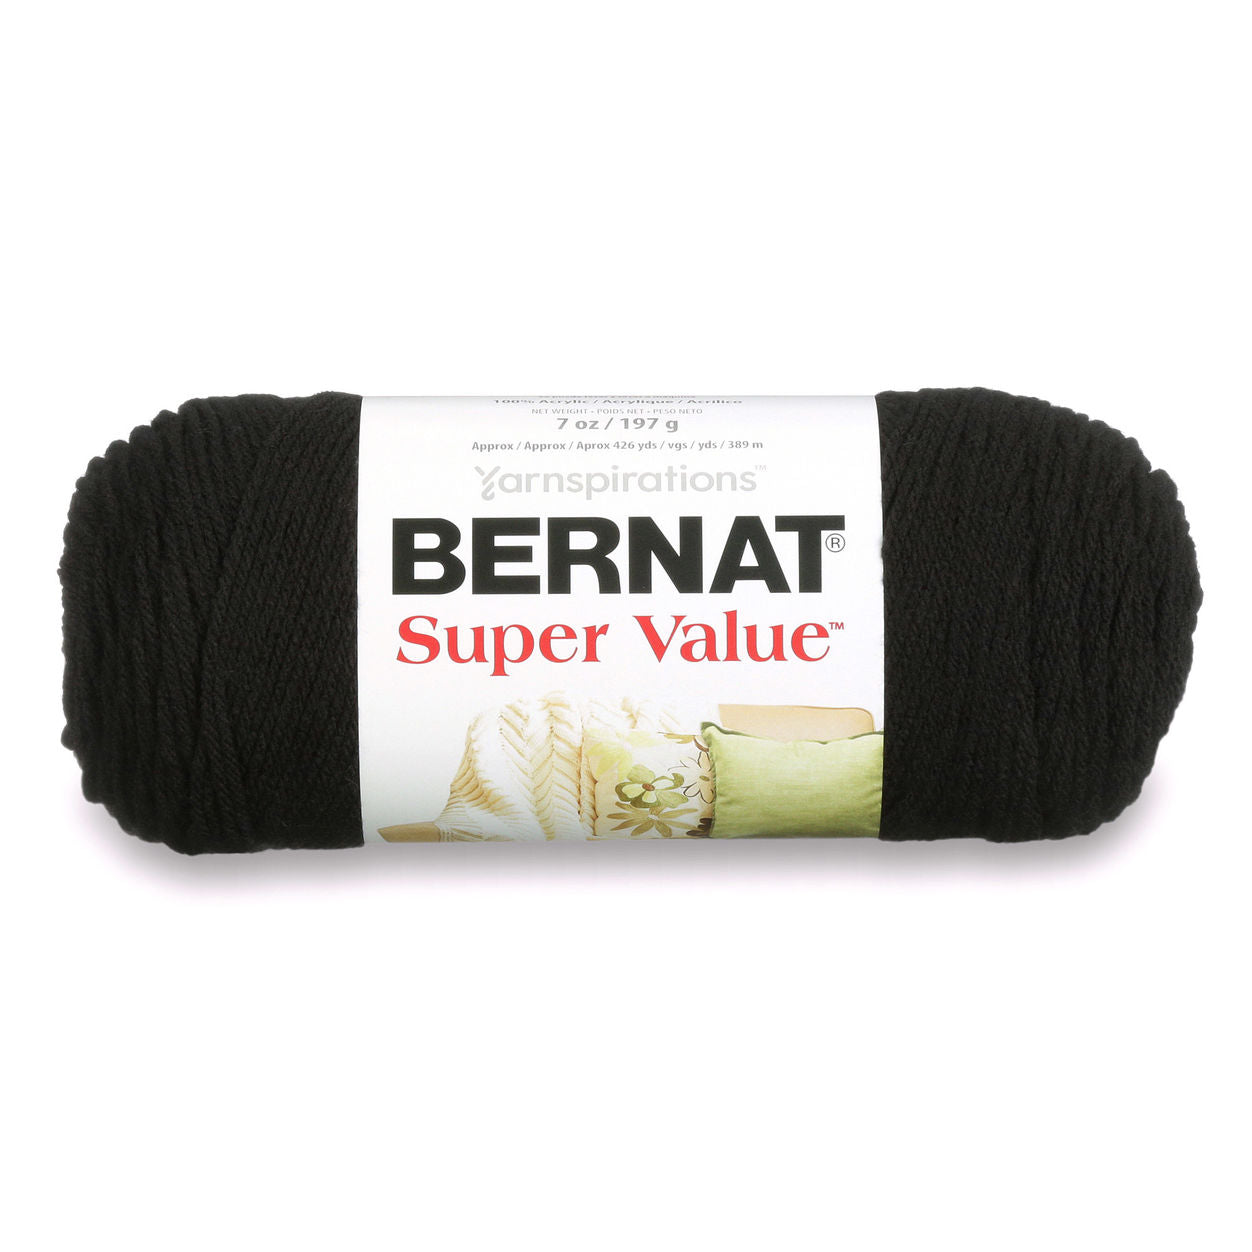 Bernat Yarn Super Value | Large Skein, For Beginners & Large Projects Super Value Yarn from Bernat Yarn Designers Boutique